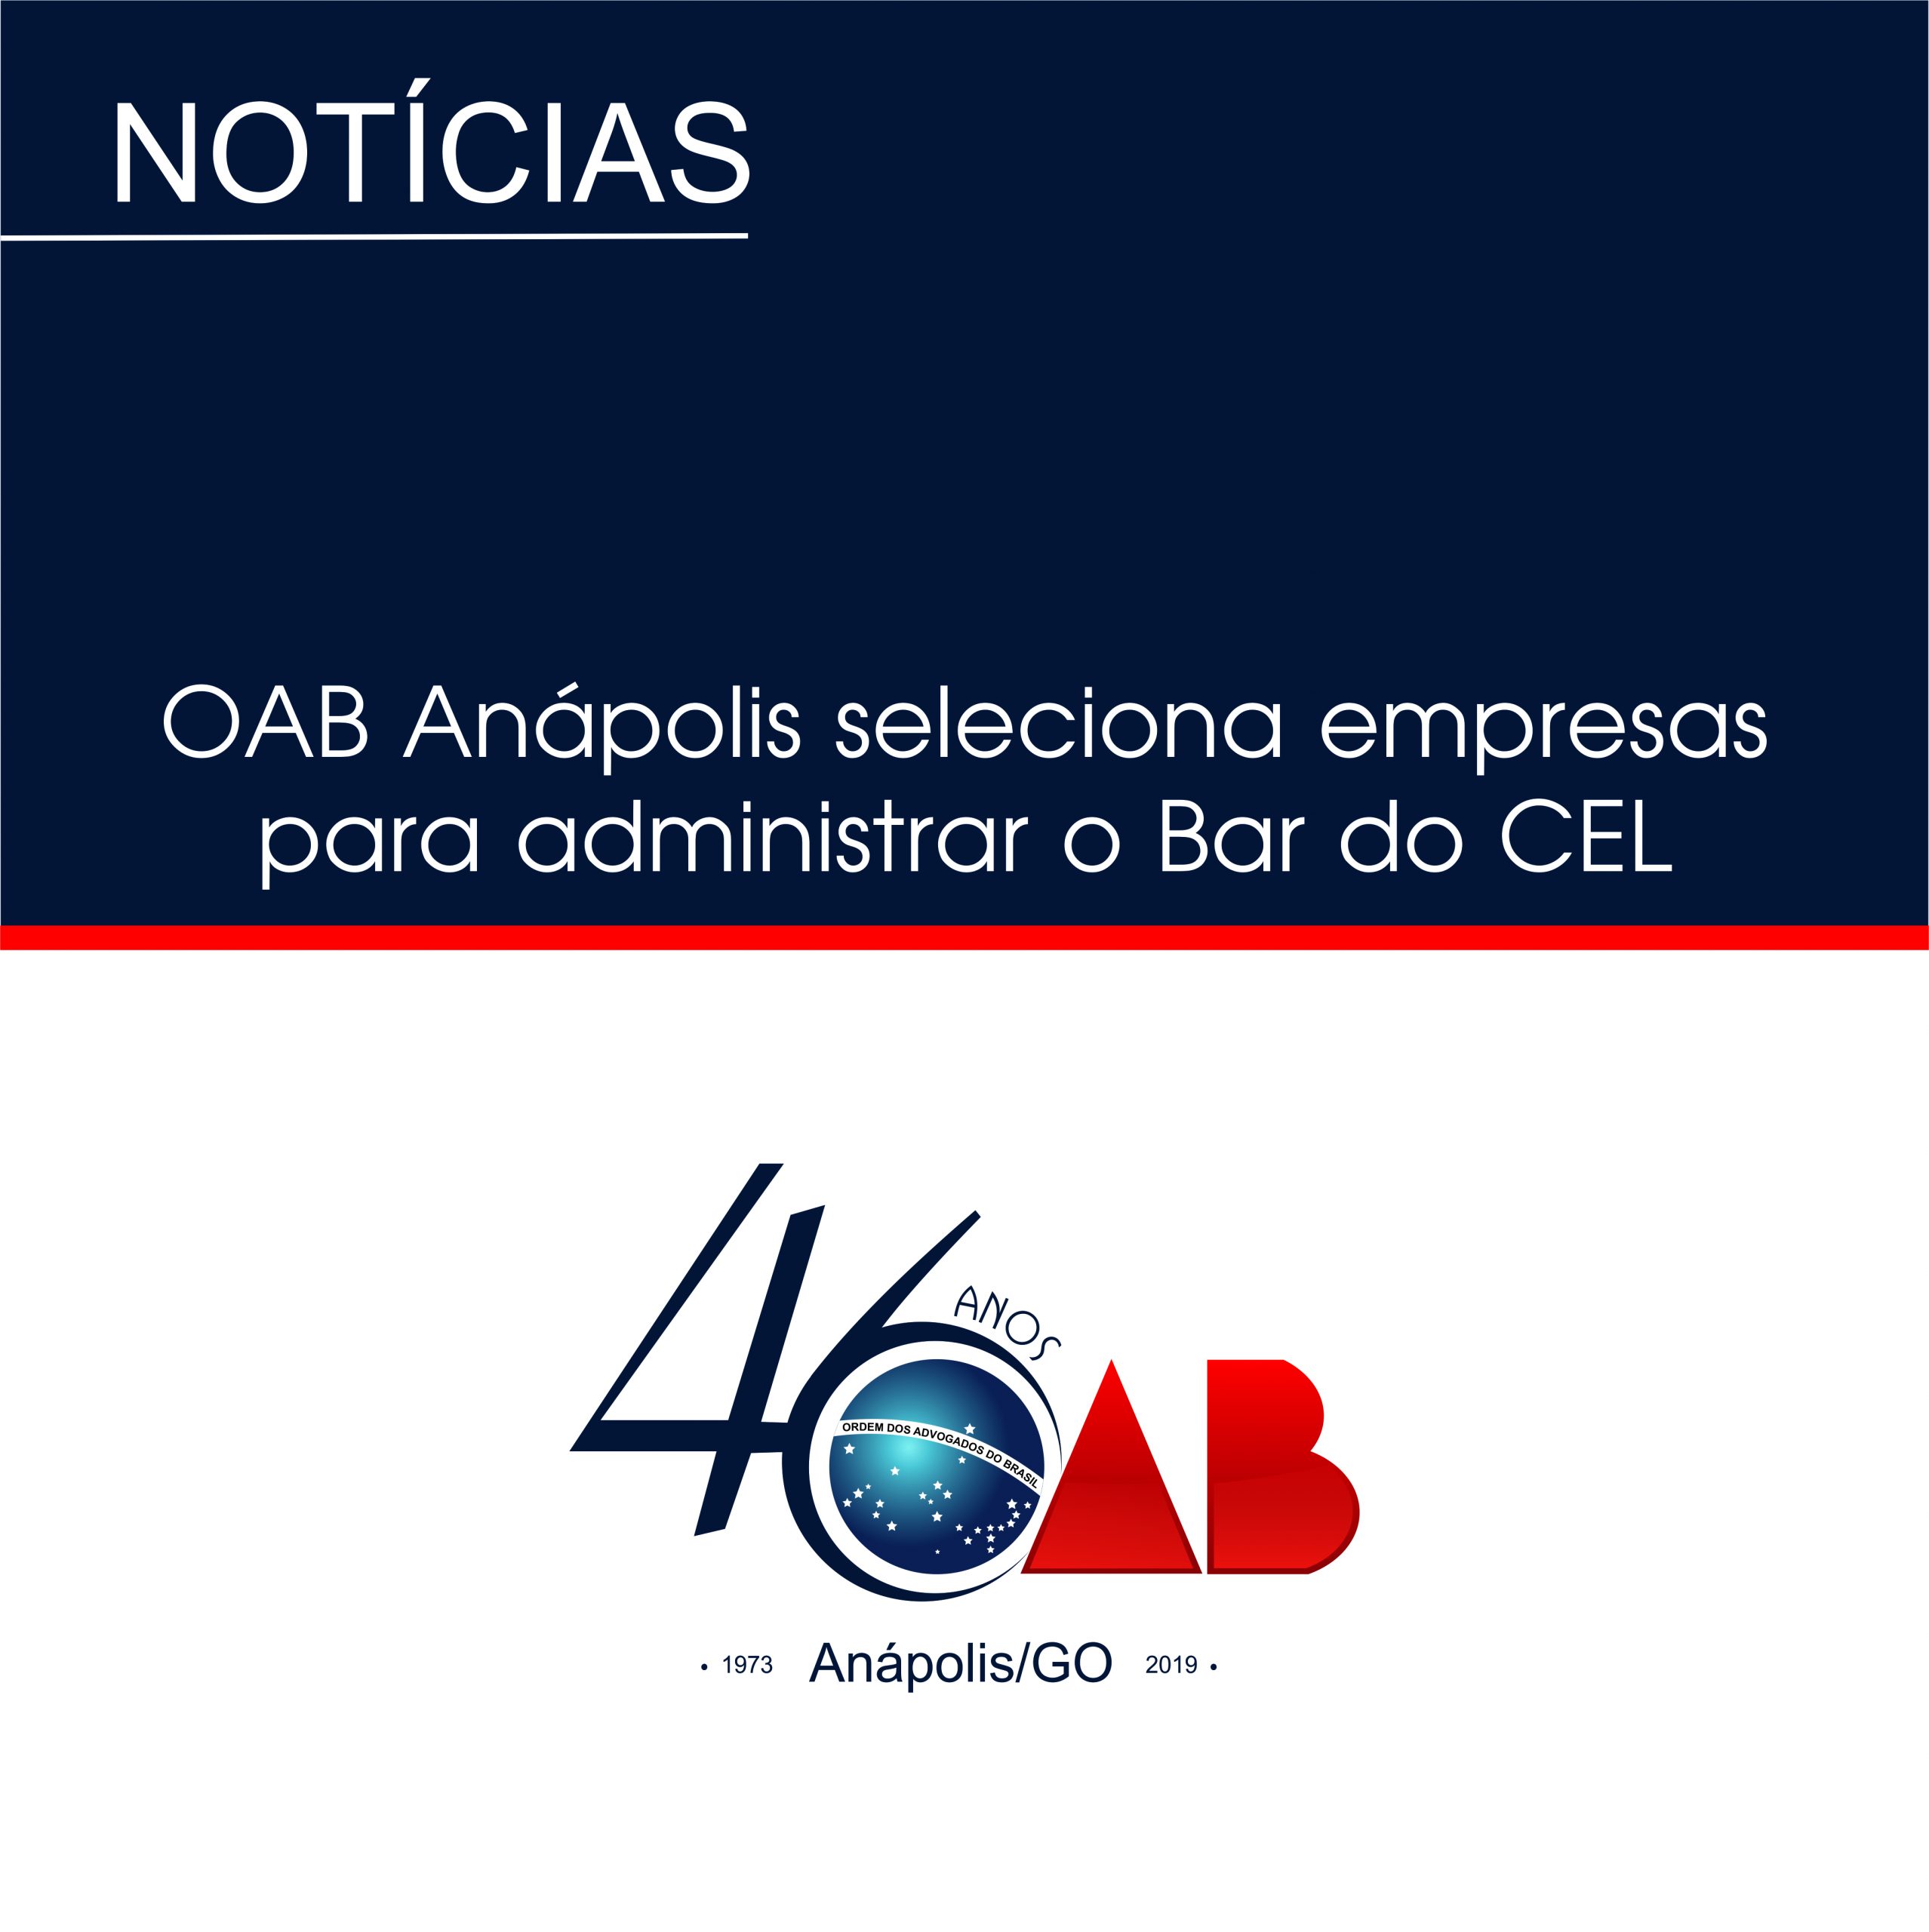 OAB Anápolis seleciona empresas para administrar o Bar do CEL